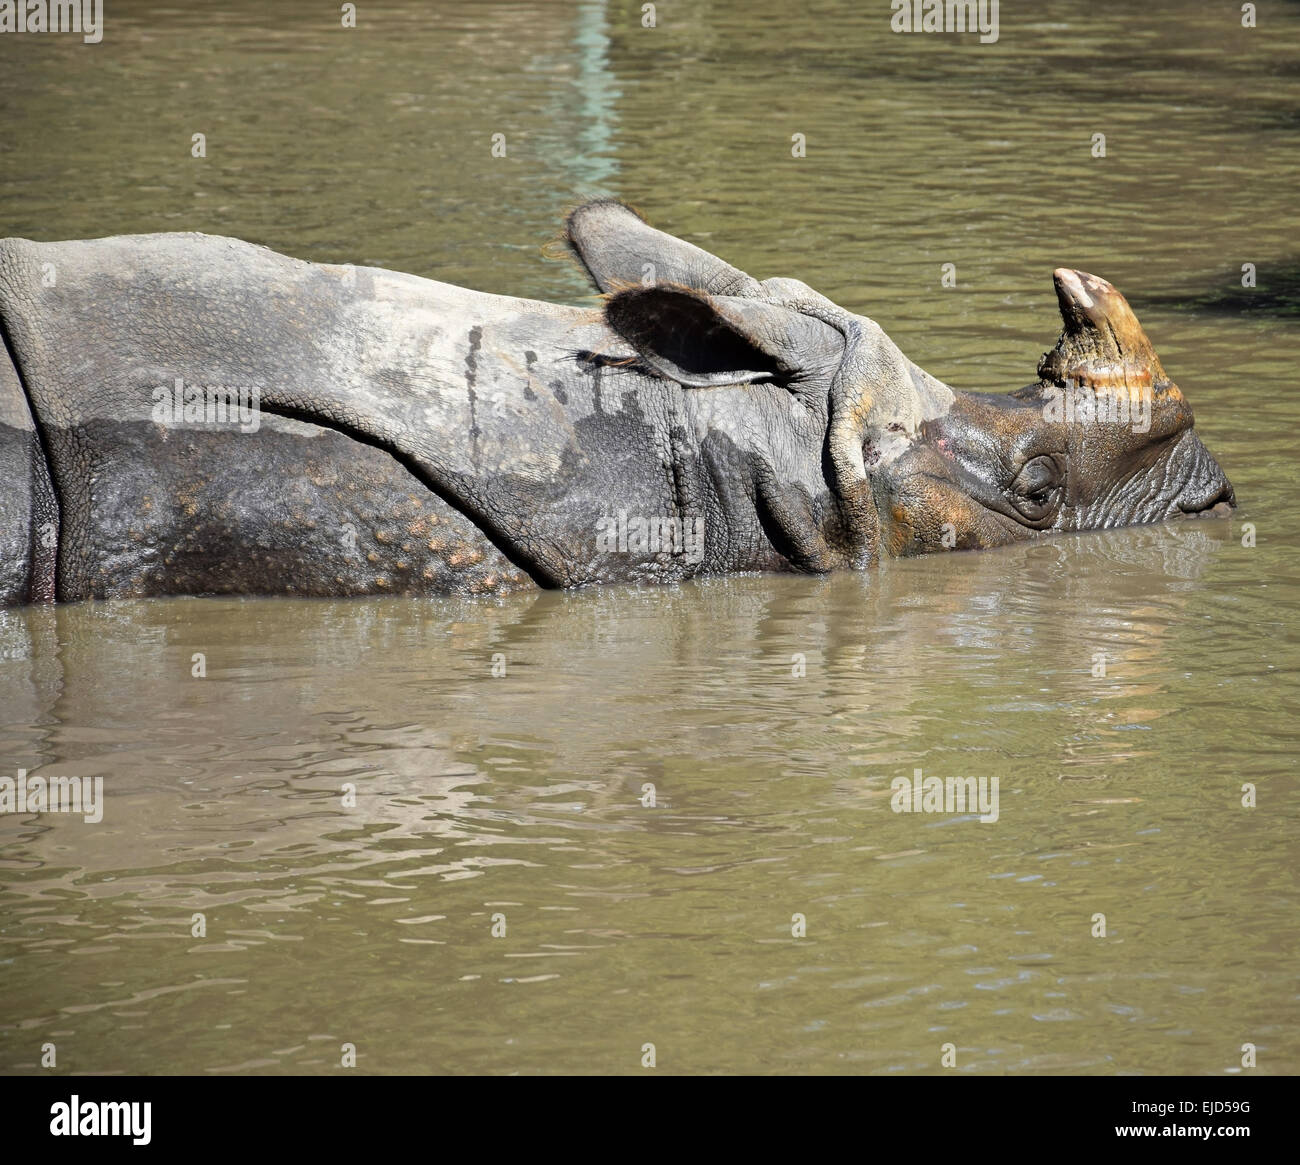 Rhinoceros es bañarse Foto de stock